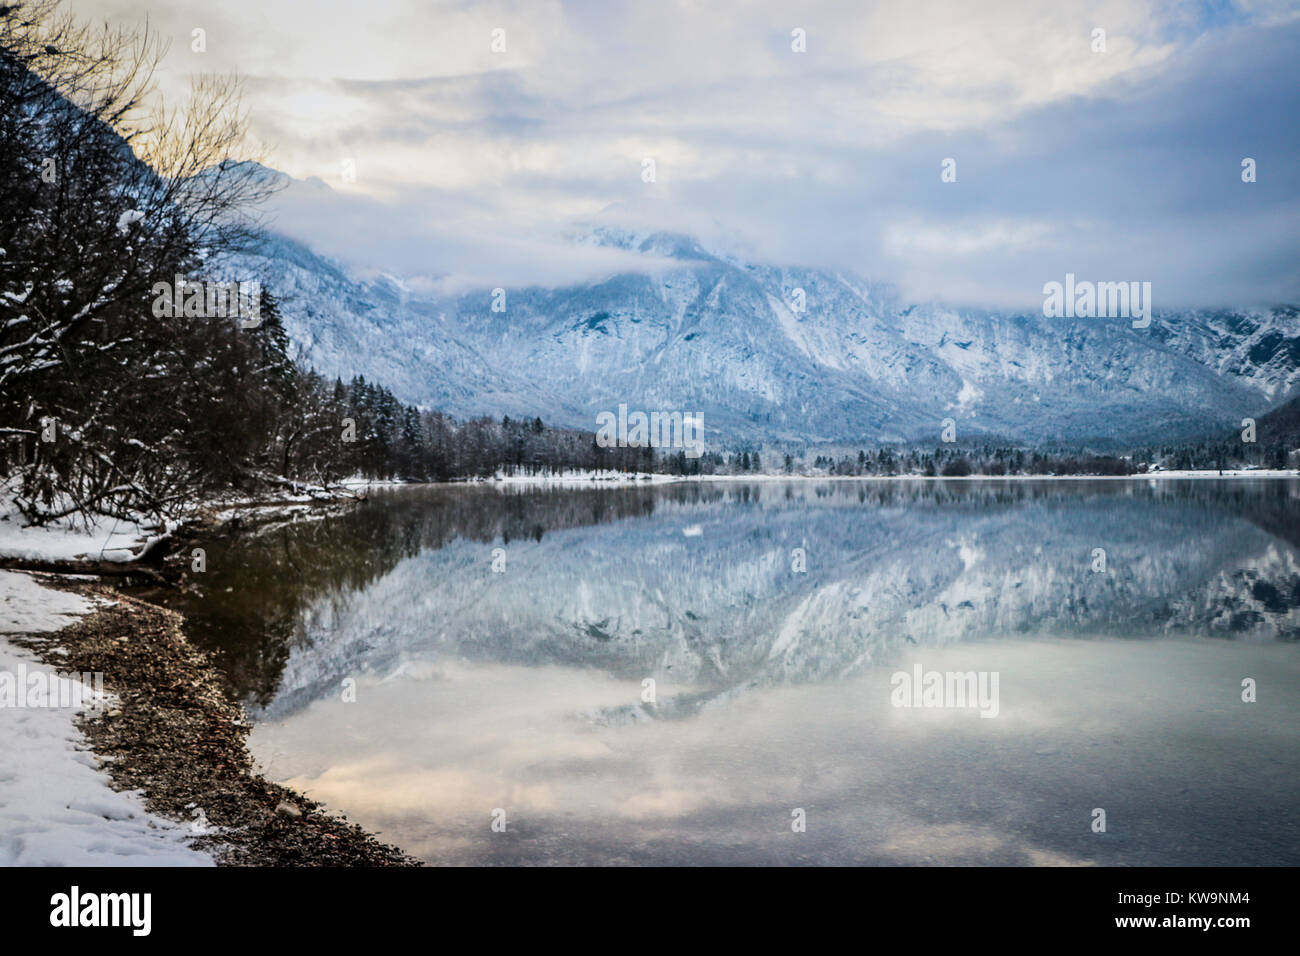 L'étonnante sérénité du lac de Bohinj, en Slovénie, est capturée dans cette image merveilleuse, parfaite pour orner le front d'une carte de Noël ou une carte postale. Banque D'Images